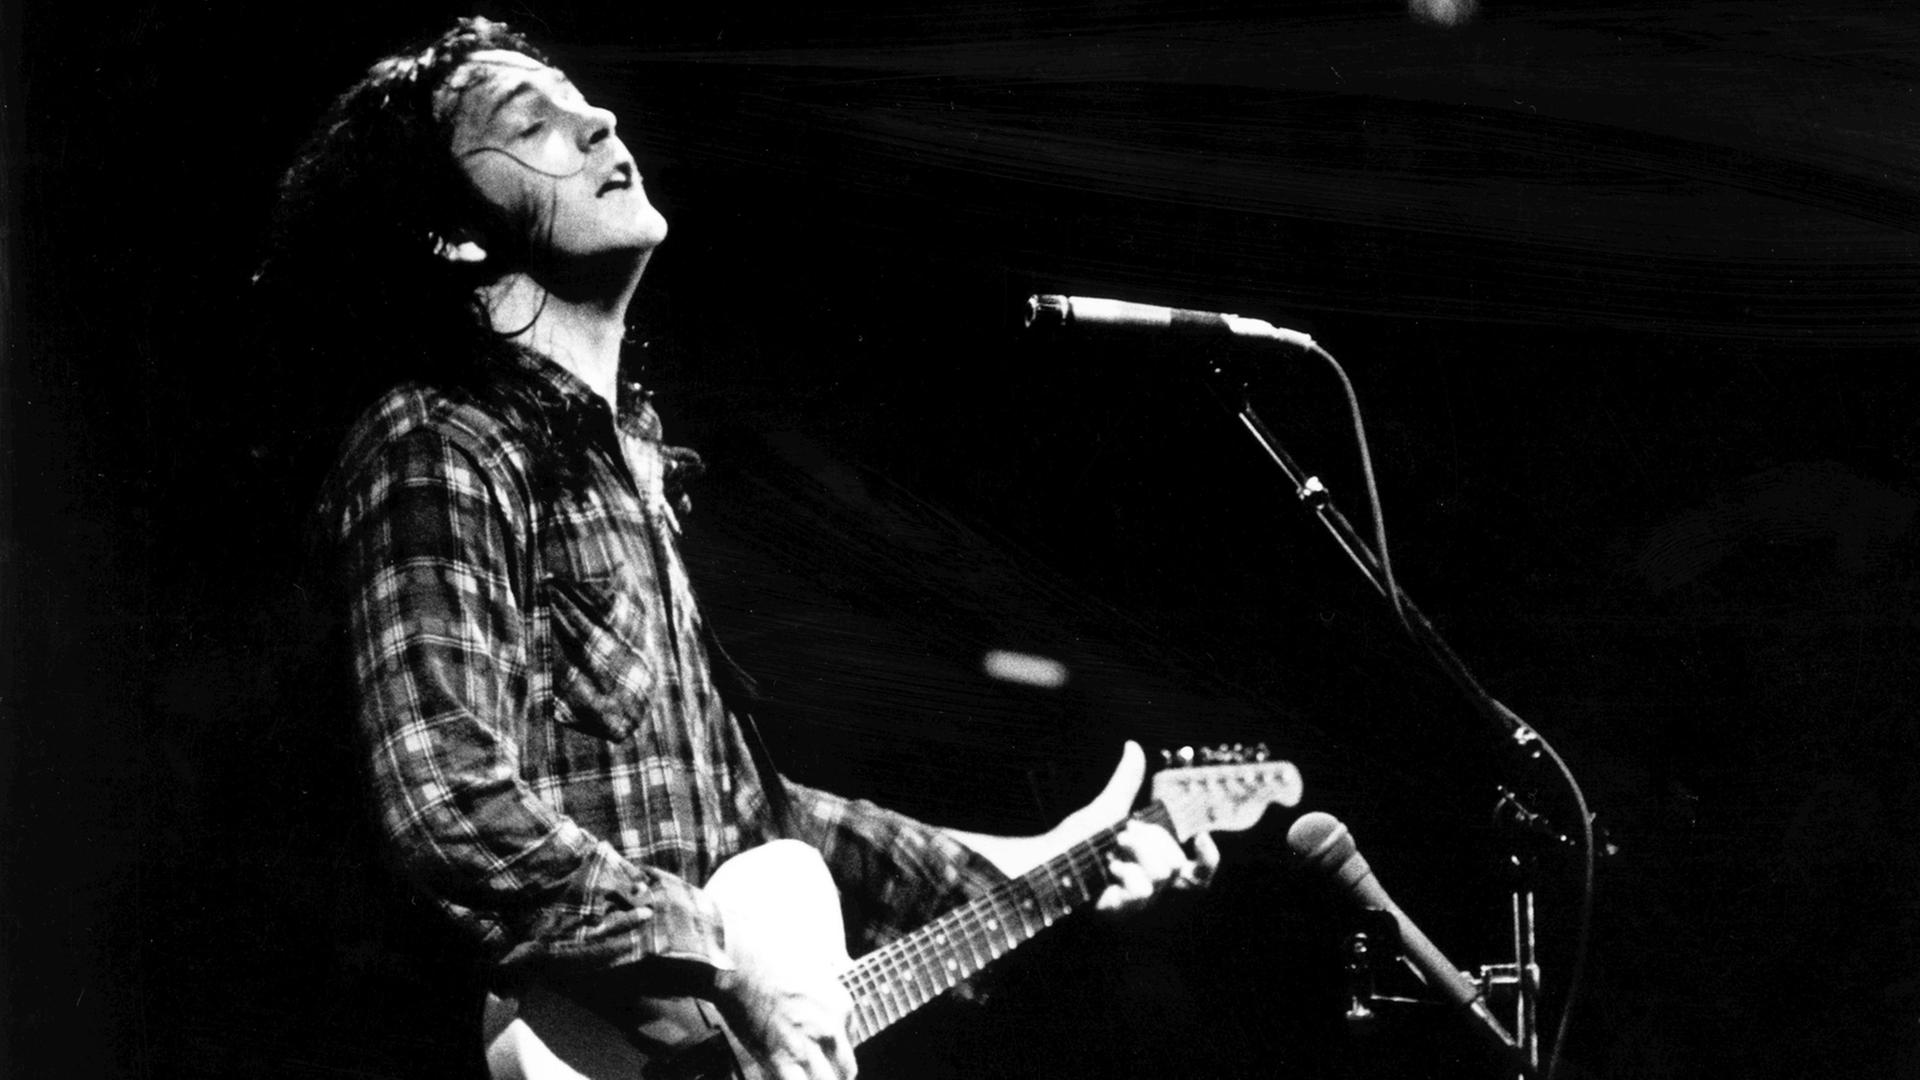 Der irische Gitarrist und Singer-Songwriter Rory Gallagher tritt während seiner Deutschland-Tournee am 9. Oktober 1979 in der Offenbacher Stadthalle auf